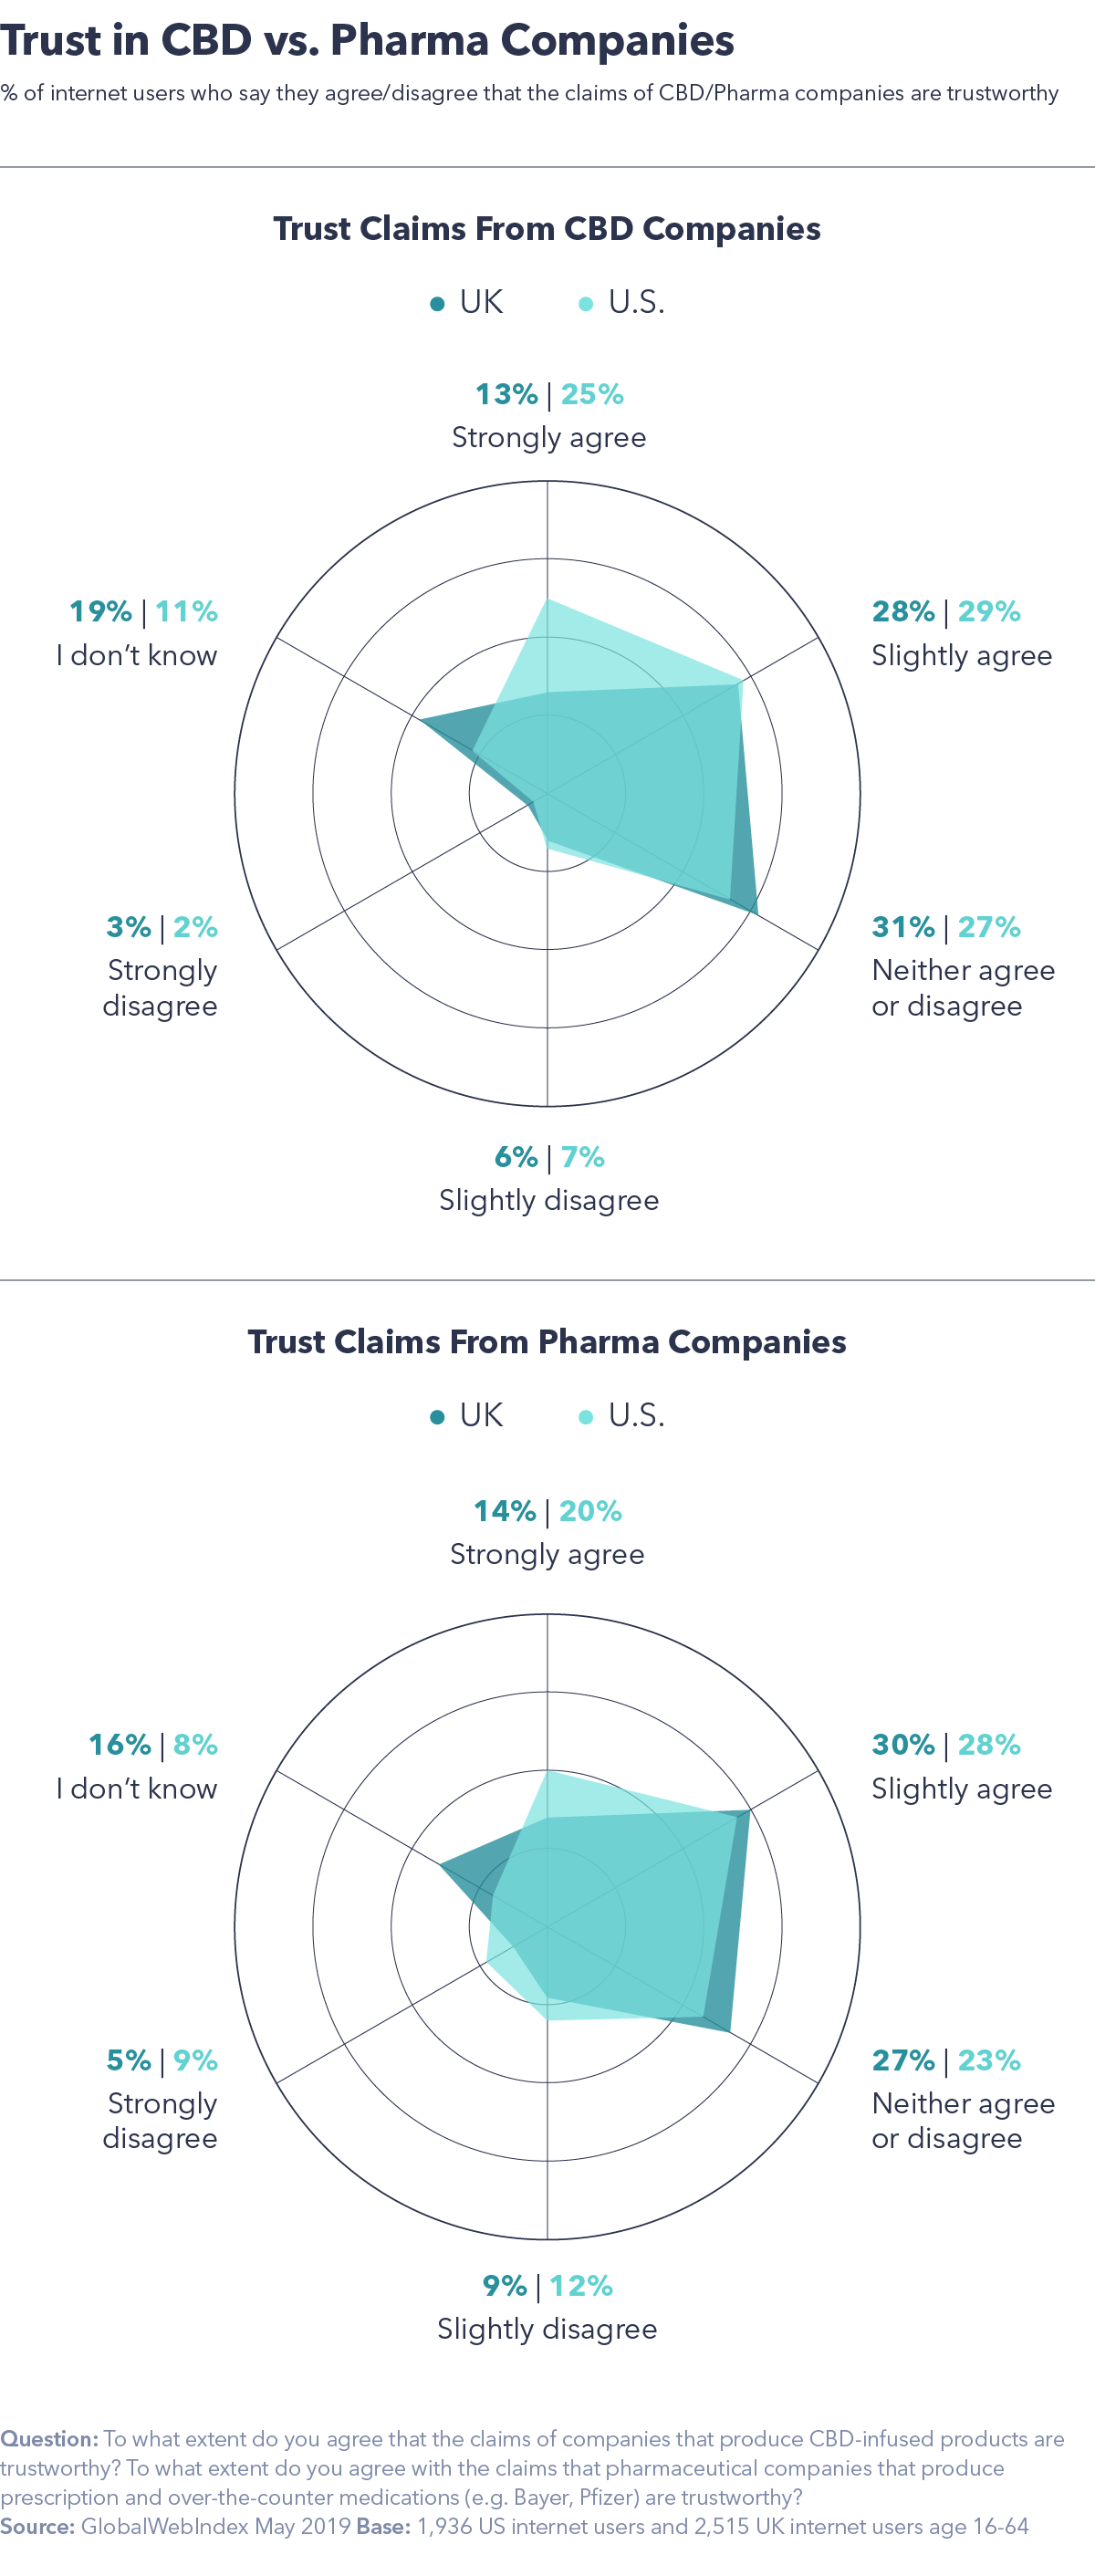 Trust in CBD vs Pharma companies